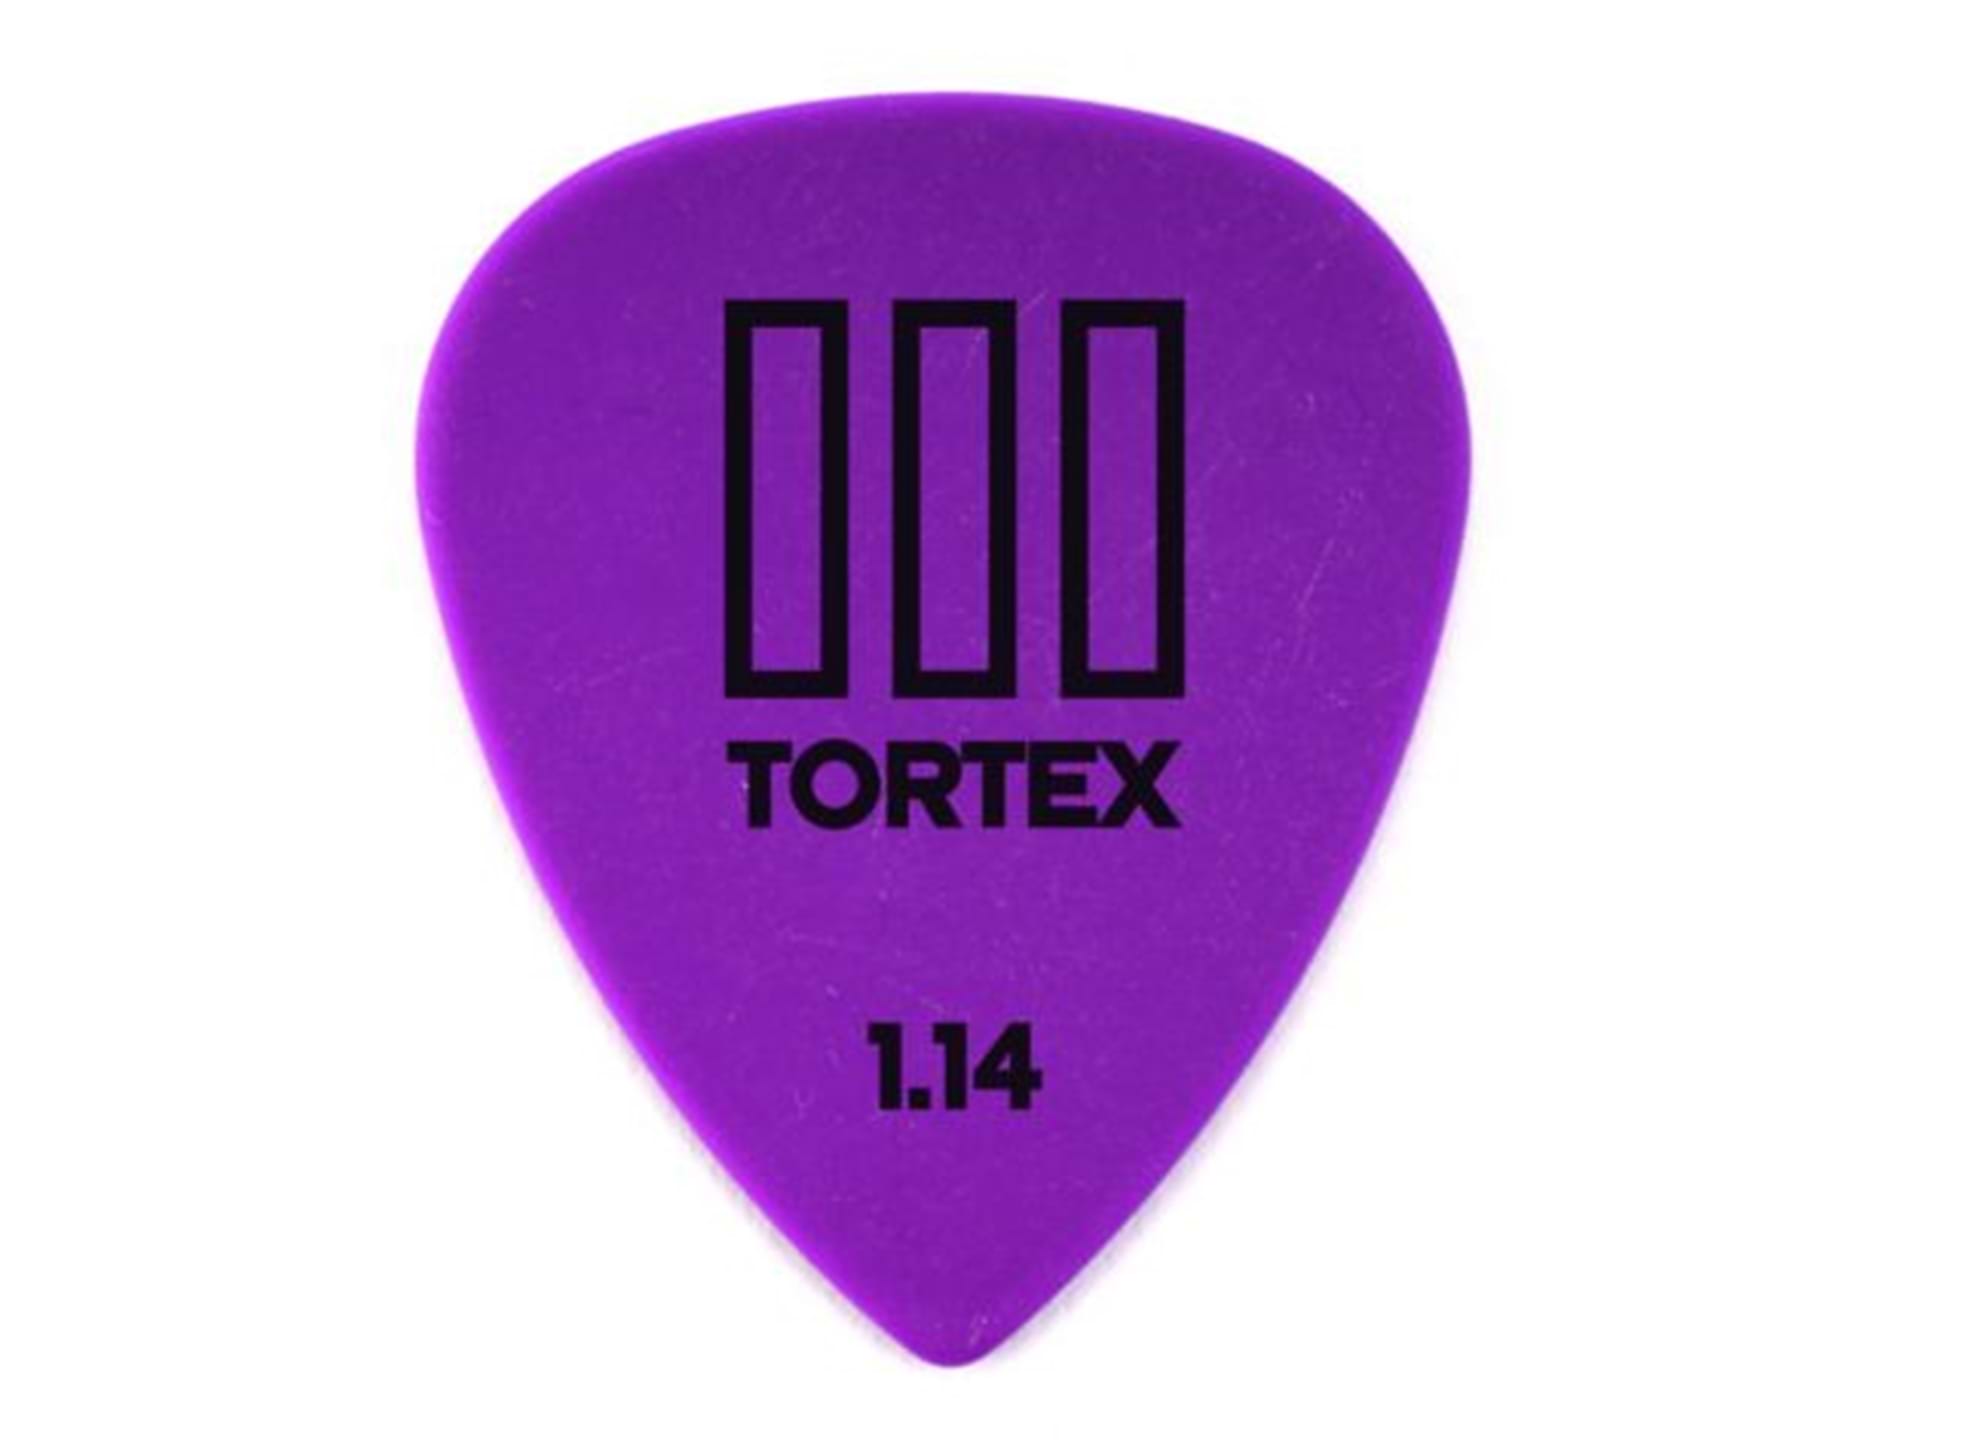 Tortex TIII 1.14mm (10-pack)